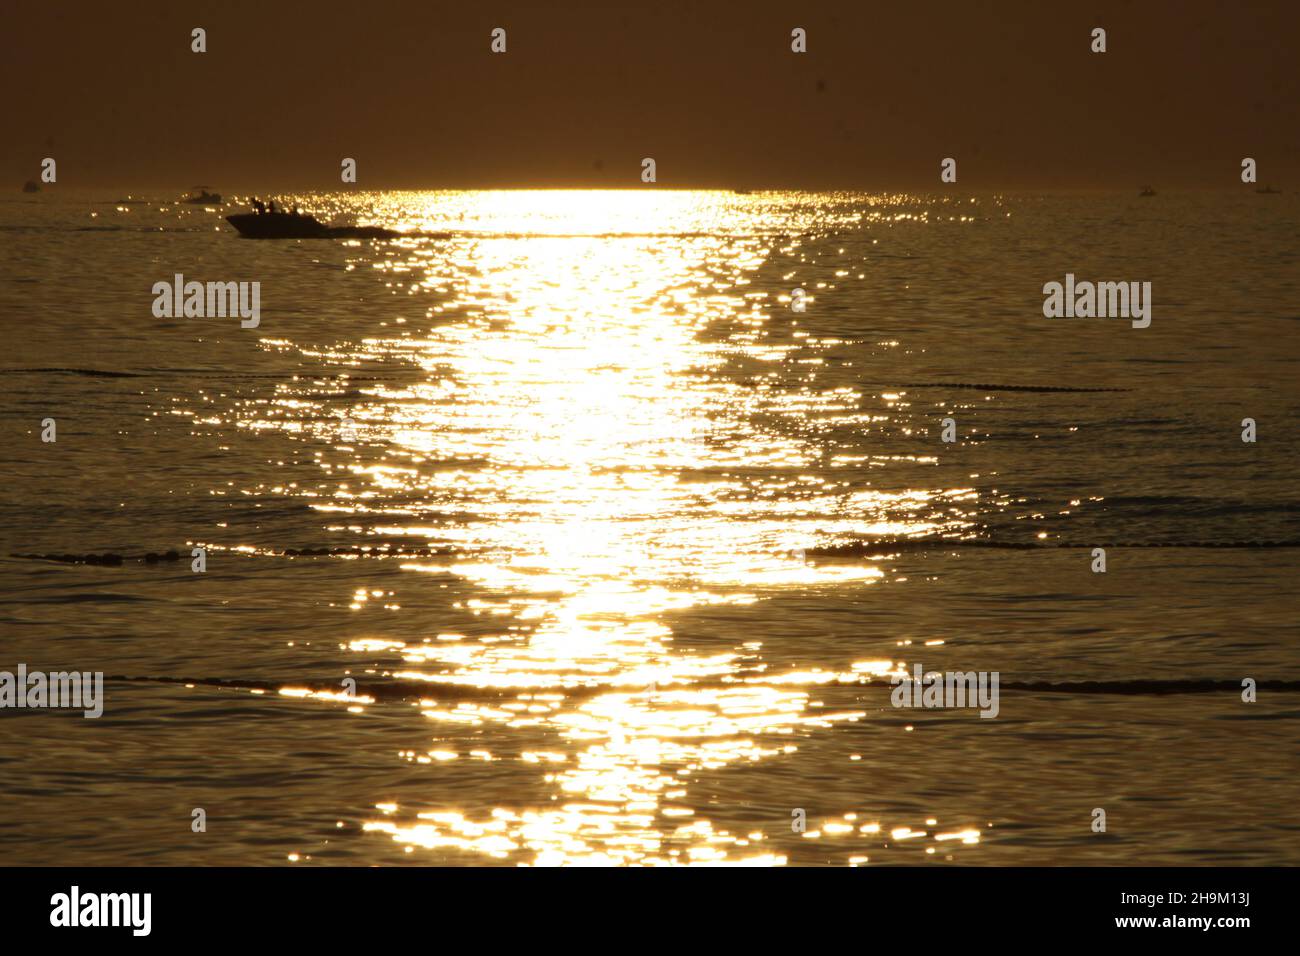 Das Muster der Wellen im Meer während des Sonnenuntergangs am Strand. Stockfoto